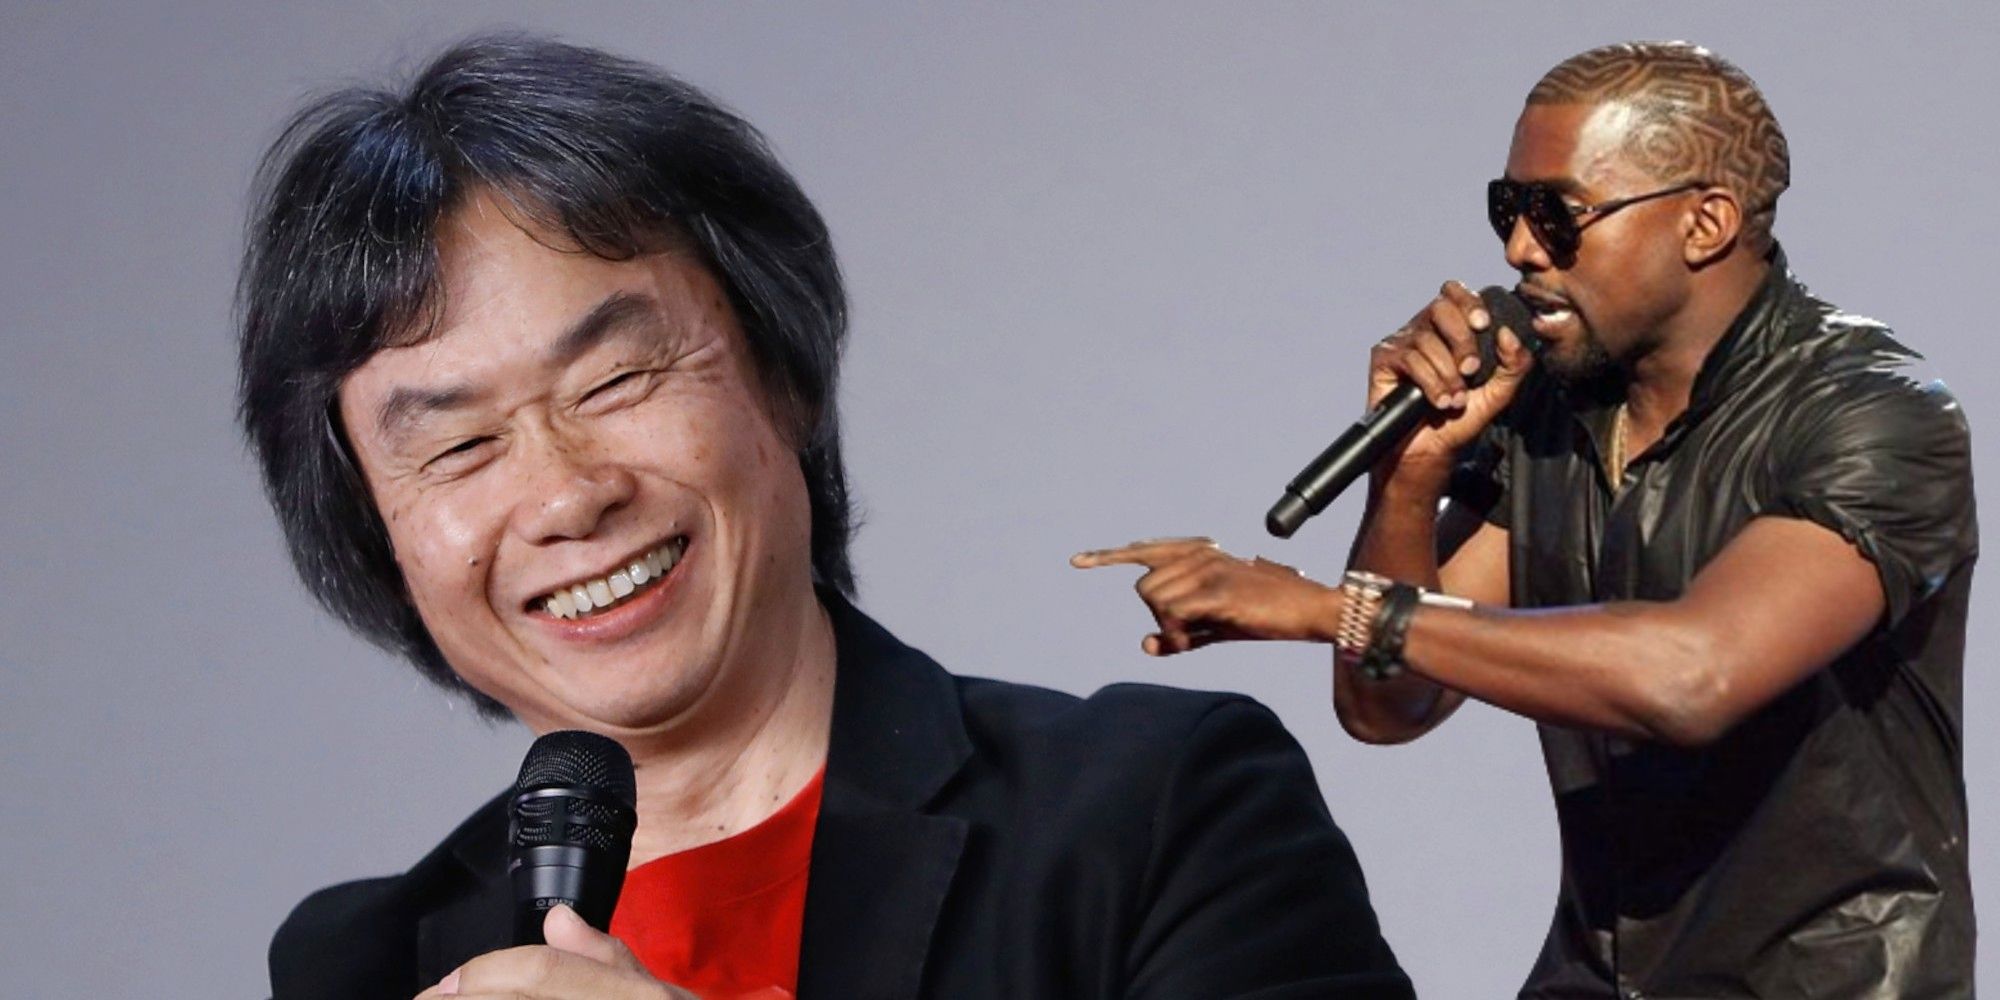 Según los informes, Kanye West lanzó un juego a la leyenda de Nintendo Miyamoto